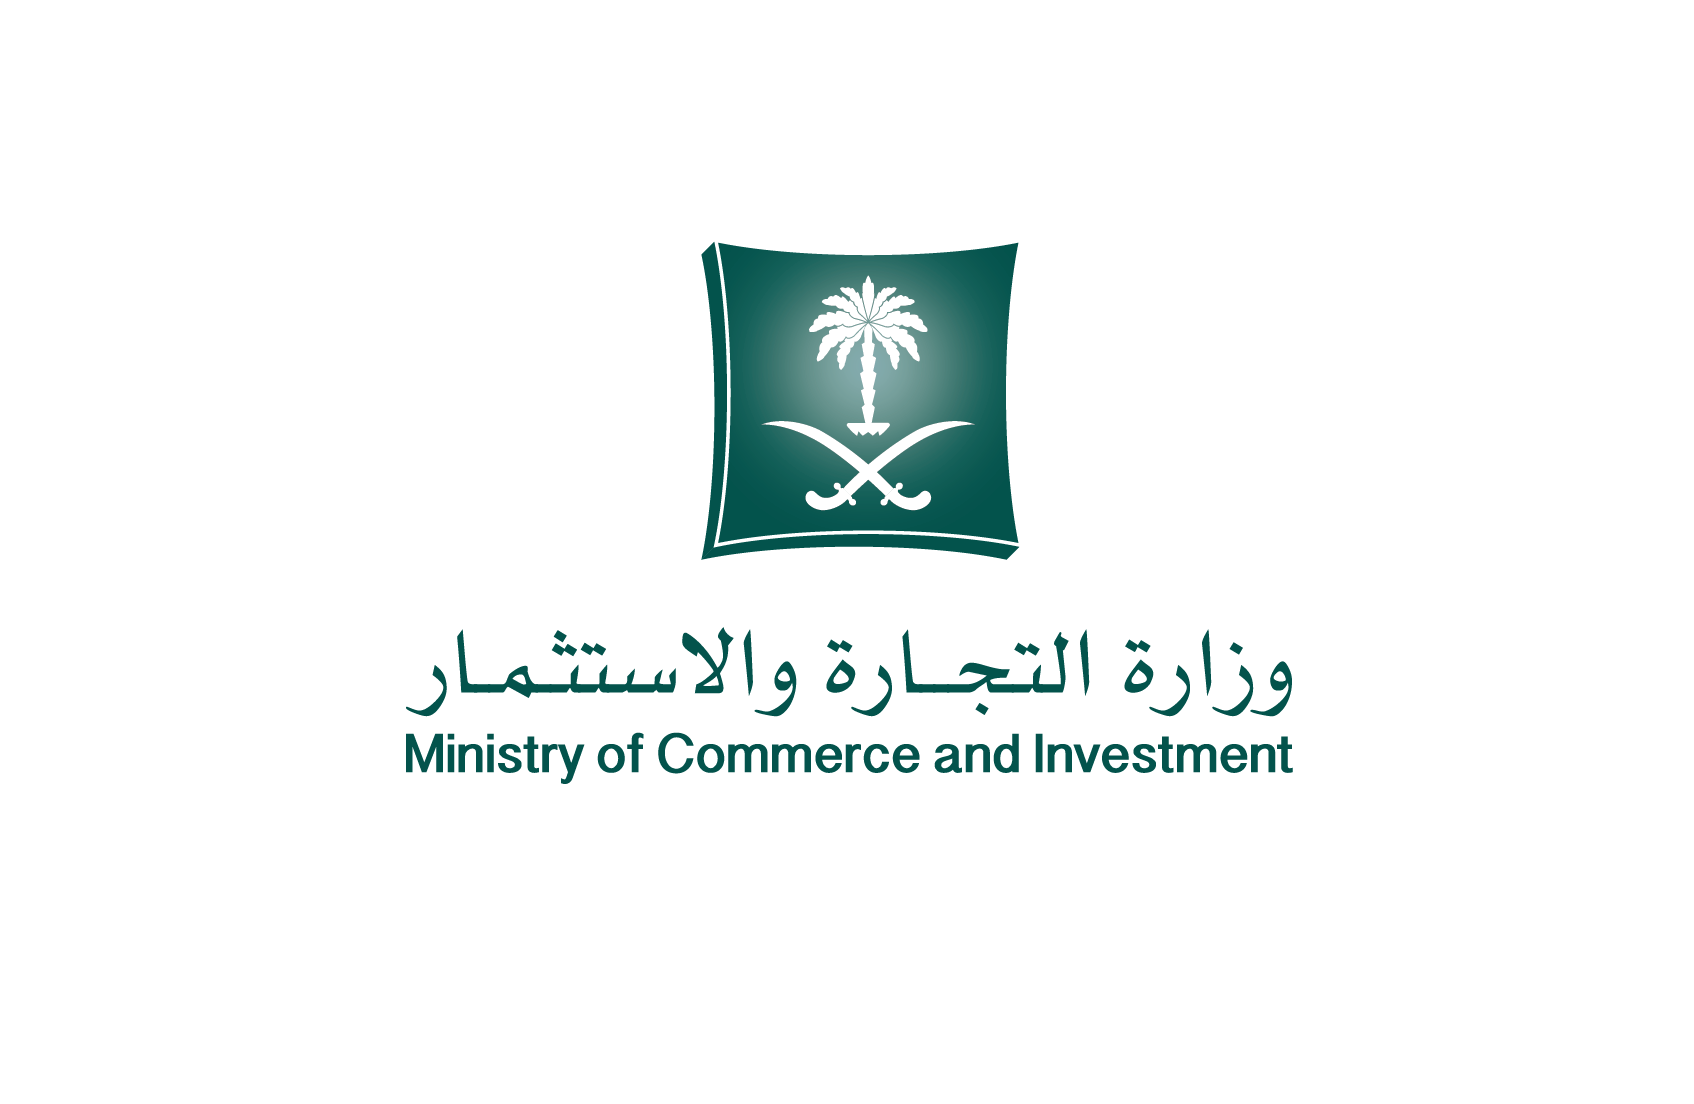 وزارة التجارة و الاستثمار تعلن عن توفر وظائف شاغرة بمجالات الادارة والتقنية والمحاسبة